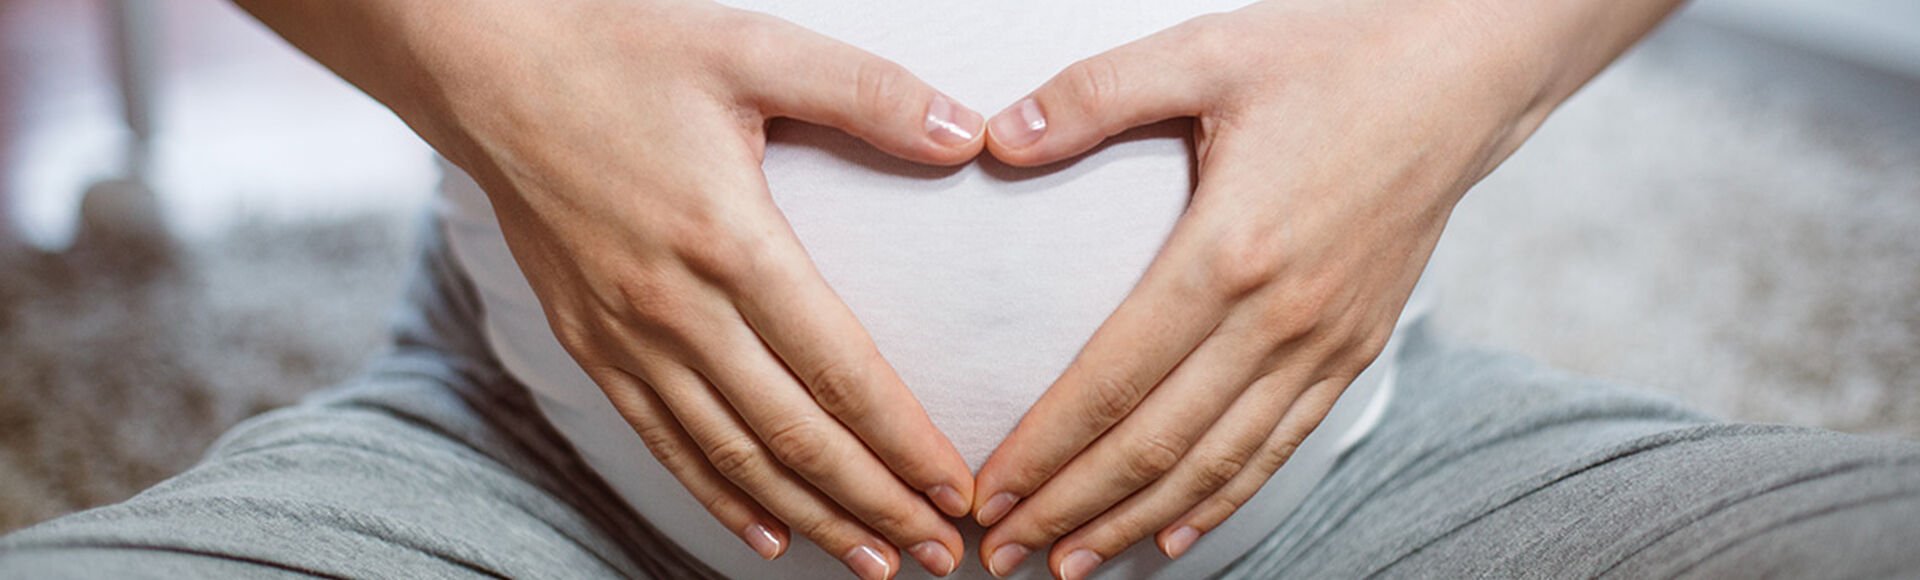 ¿Qué color es el flujo de una mujer embarazada?  | Más Abrazos by Huggies